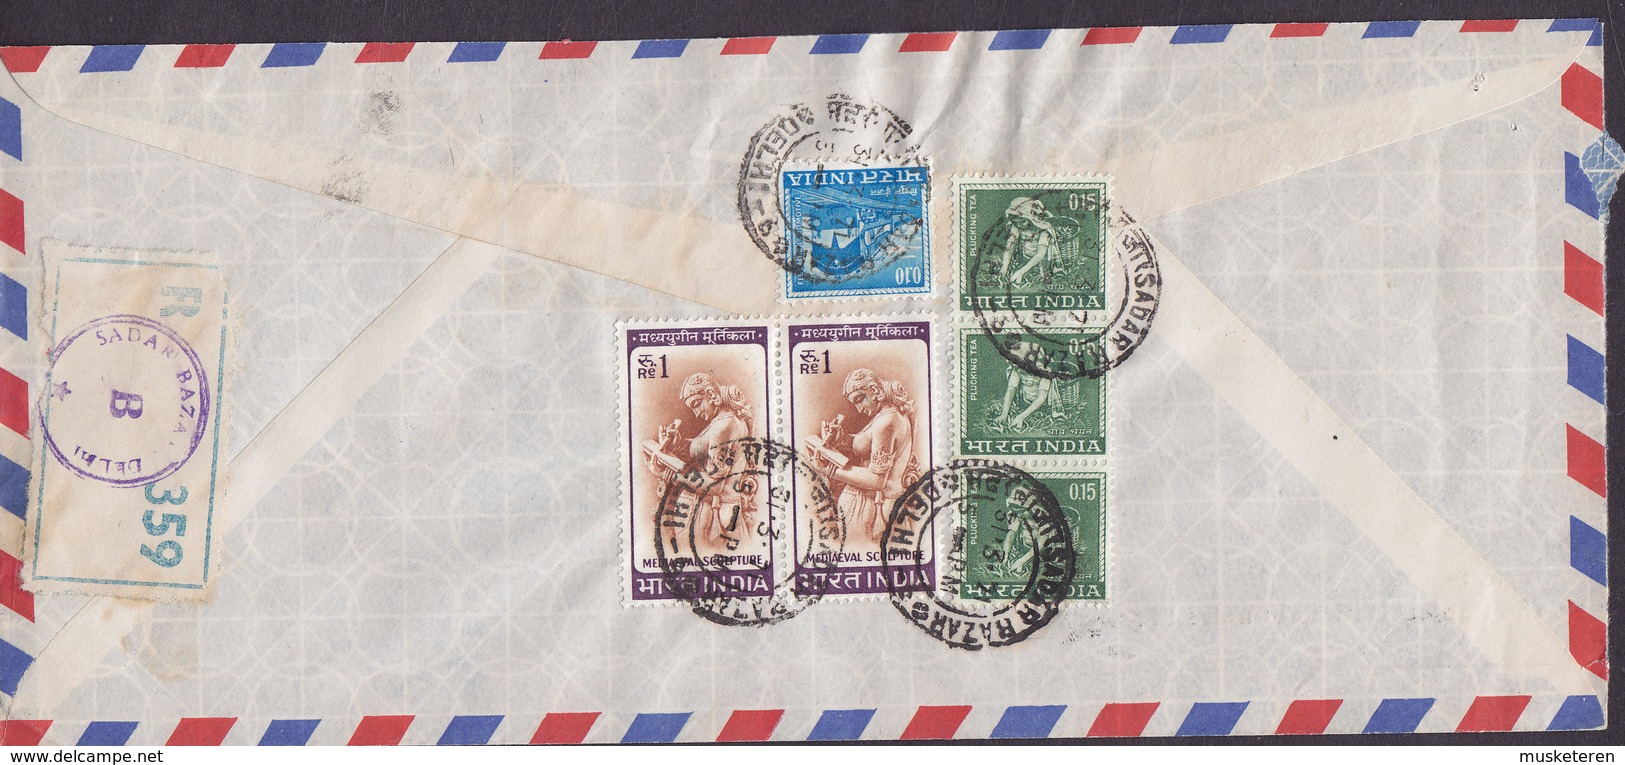 India Air Mail PUNJAB NATIONAL BANK Registered Einschreiben Label SADAR BAZAR, DELHI 1971 Cover Deutsche Bank KÖLN - Briefe U. Dokumente